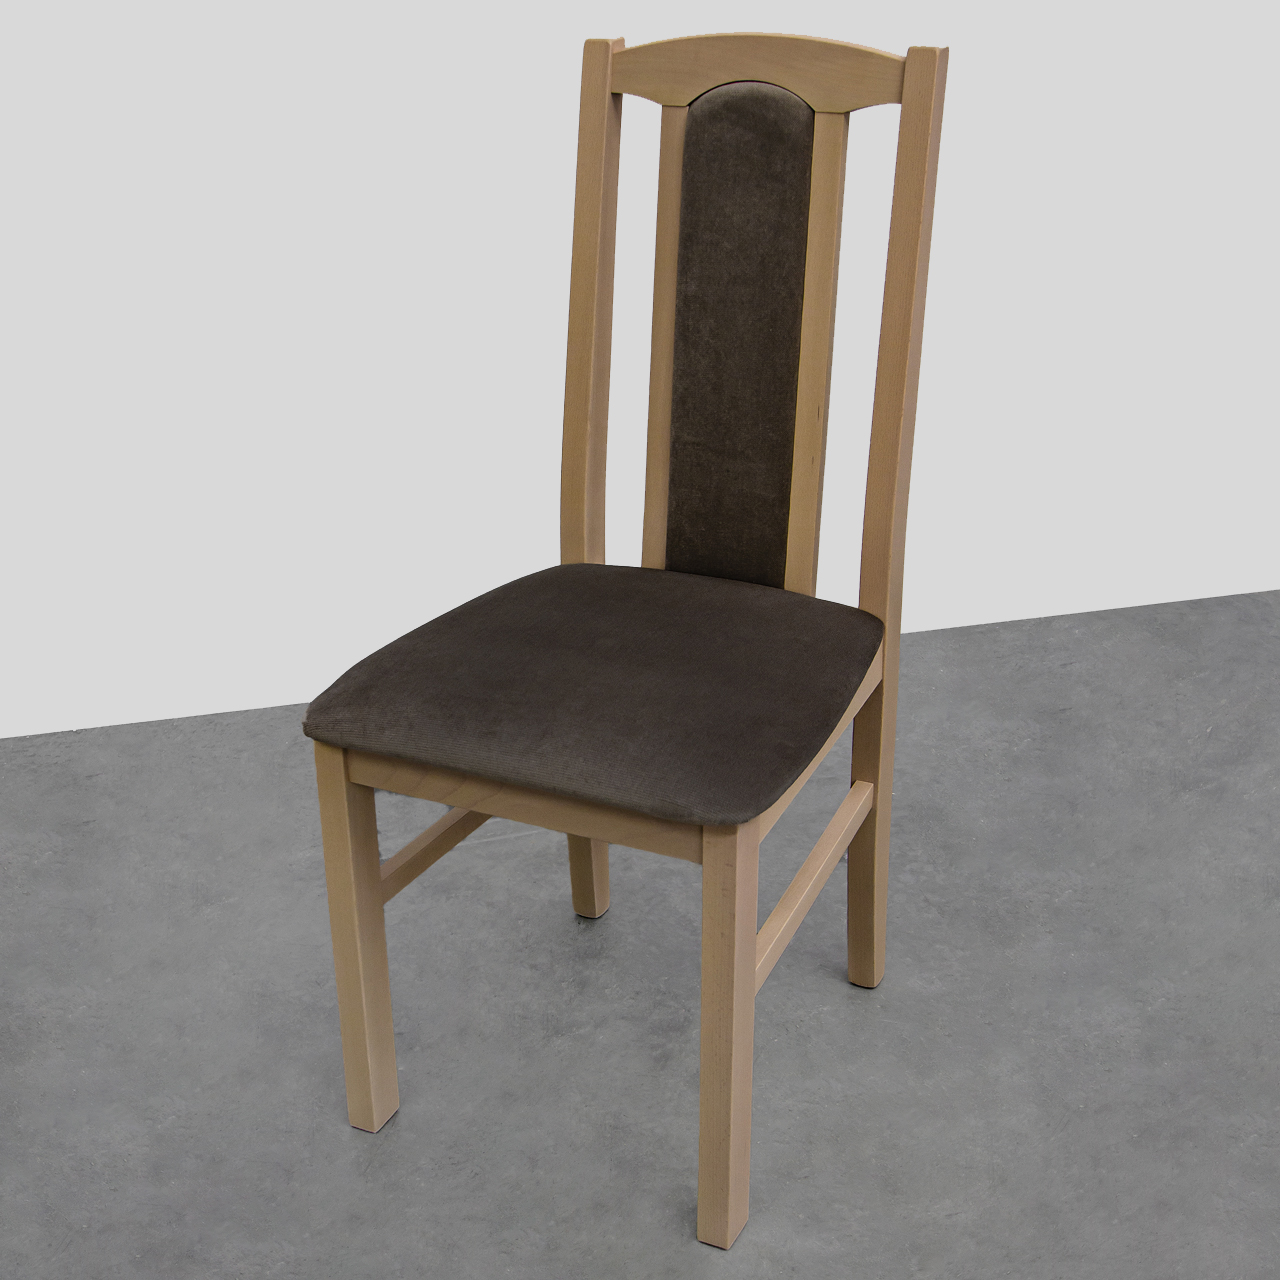 Tanie krzesło kuchenne DK7 sonoma (19) WYPRZEDAŻ